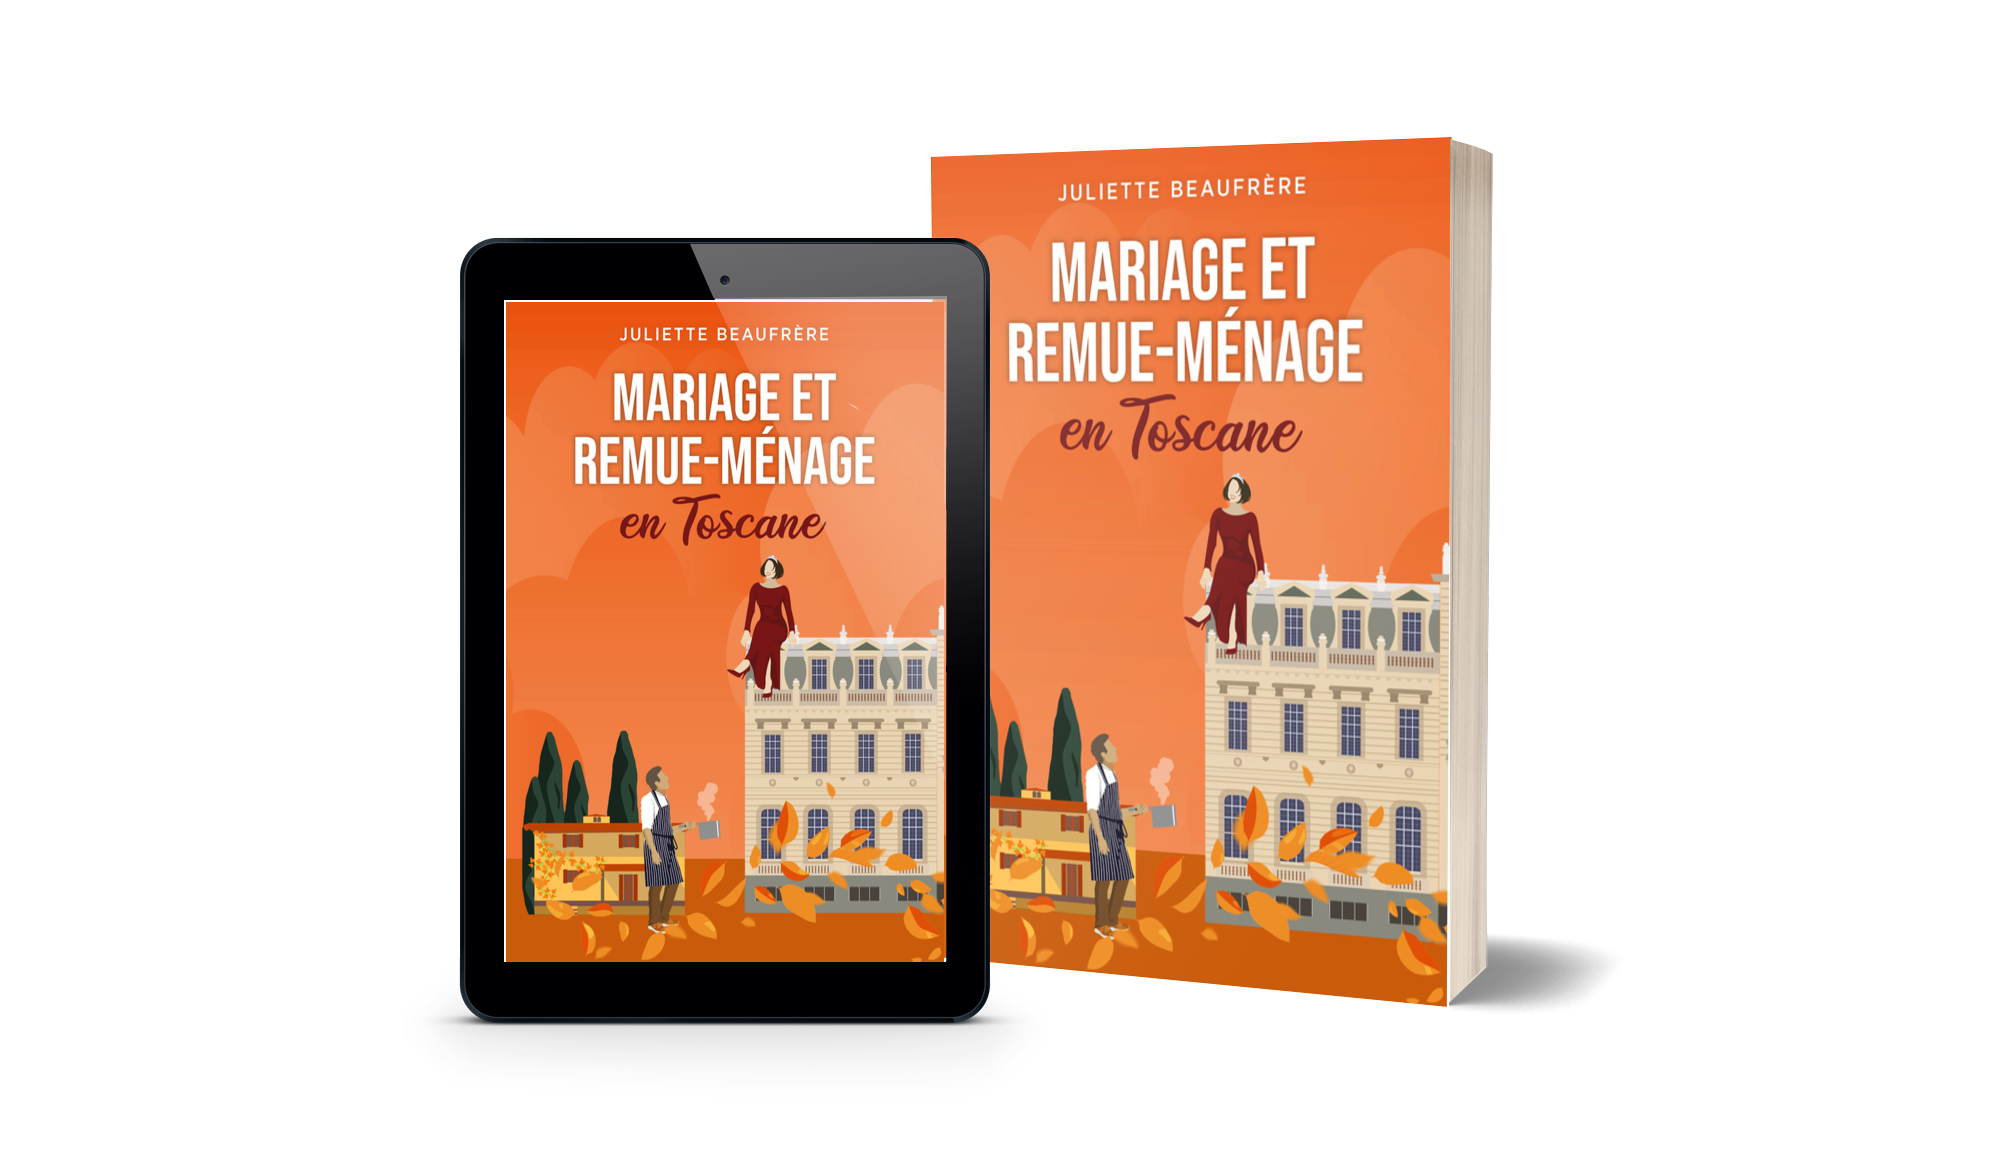 Mariage et remue-ménage en Toscane broché et ebook